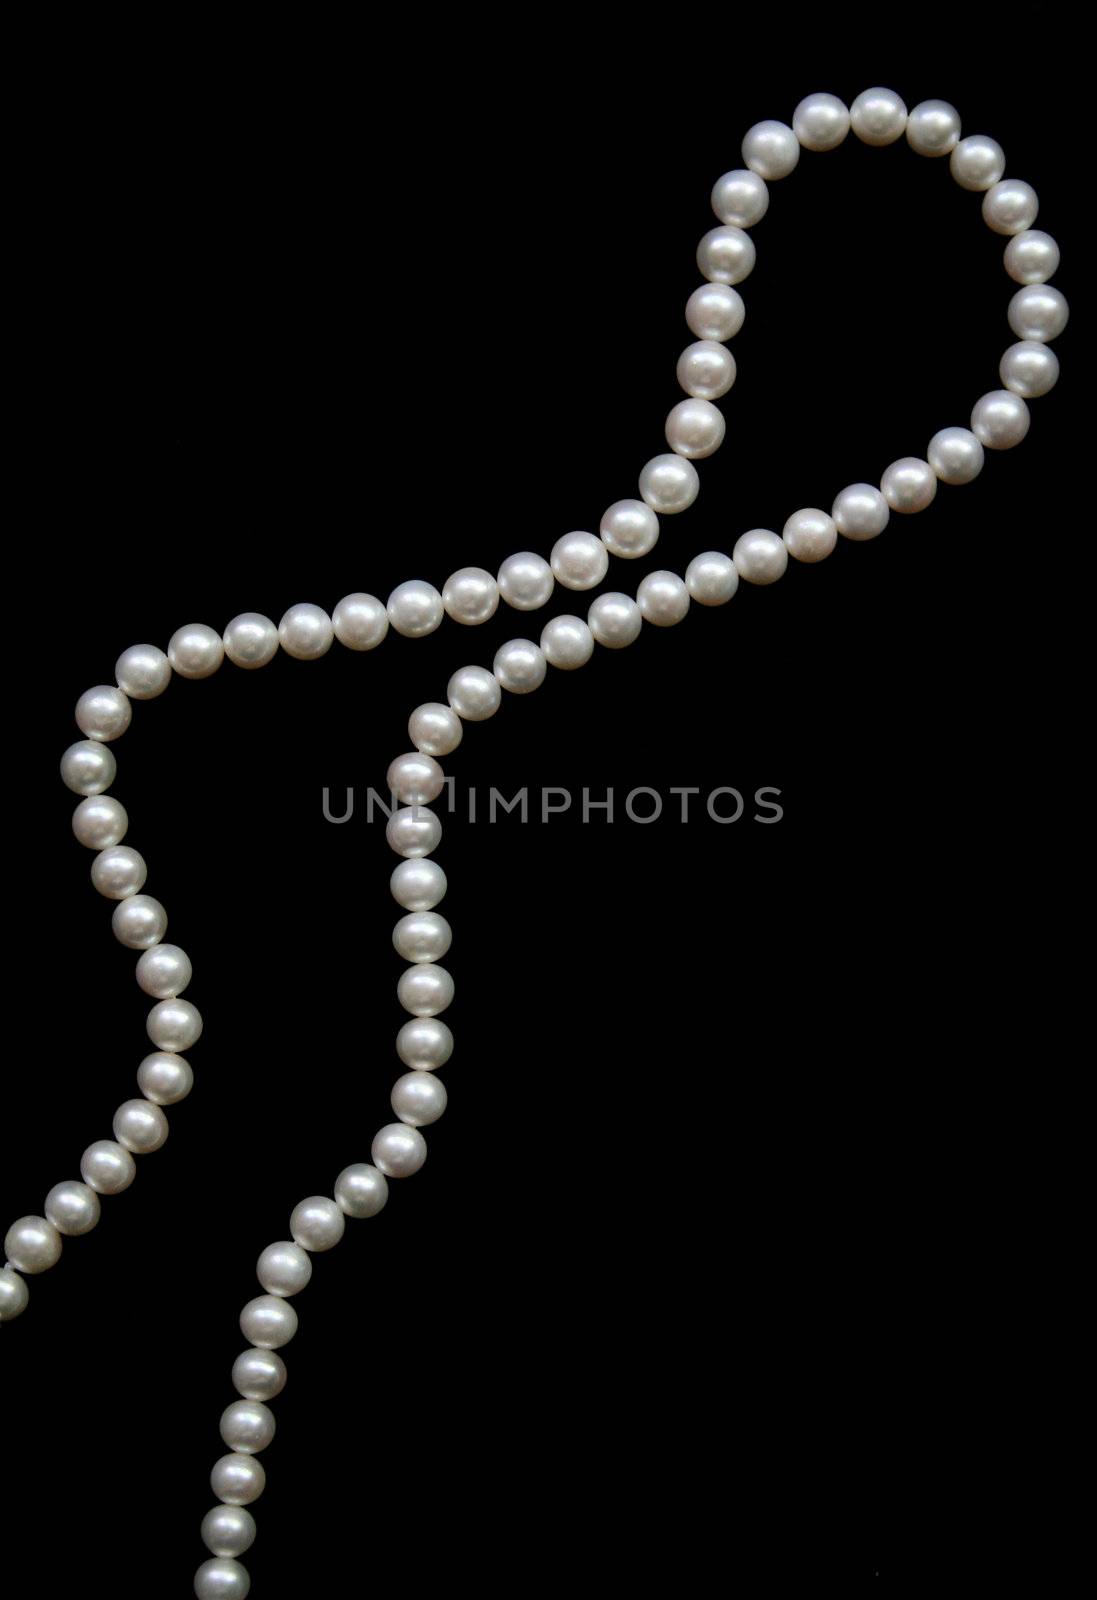 White pearls on the black velvet background 